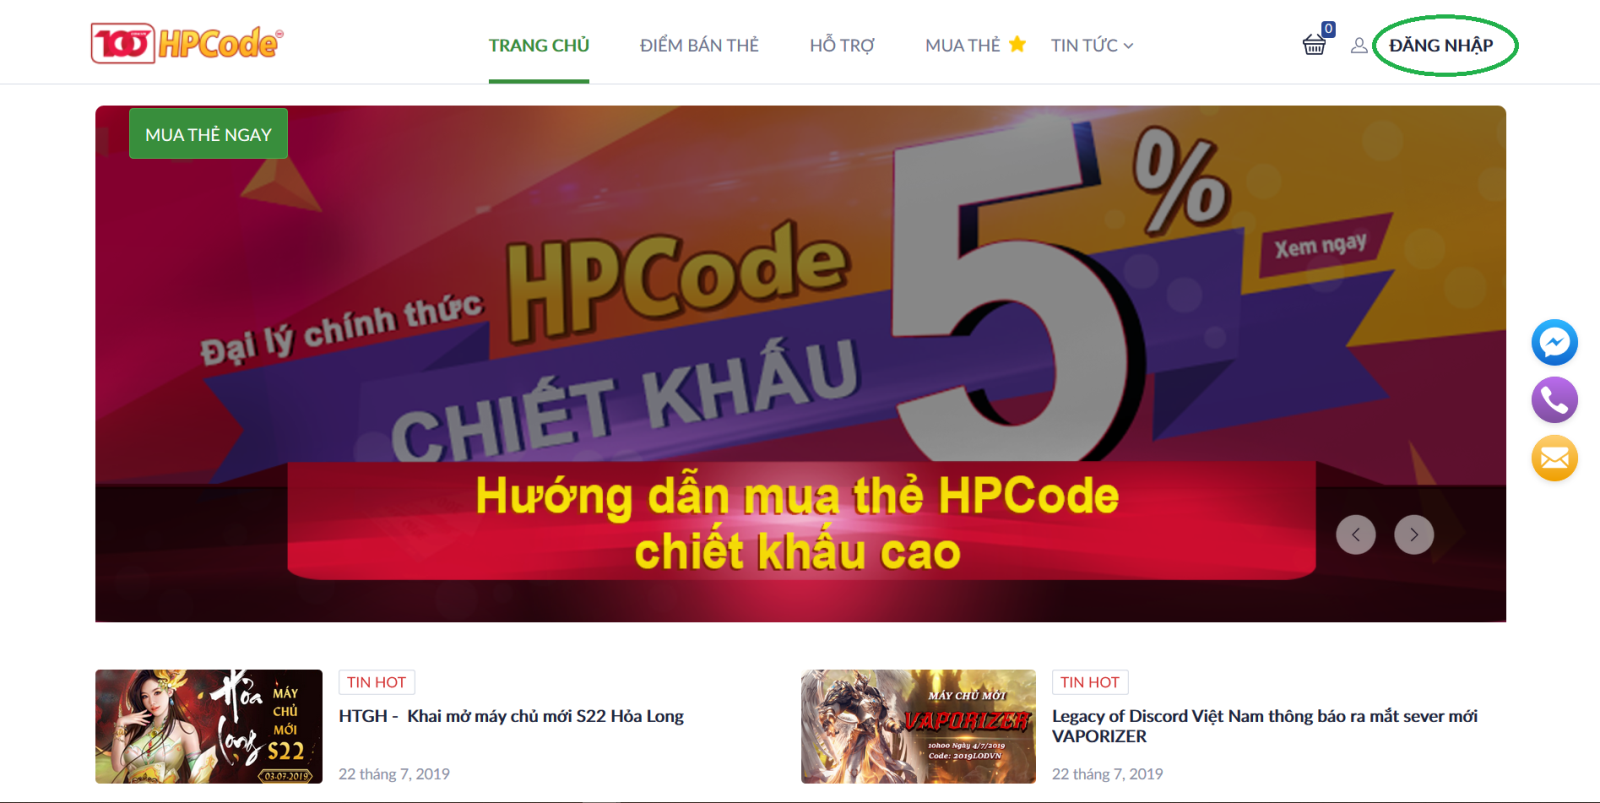 Đăng nhập tạo tài khoản thành viên HPCode